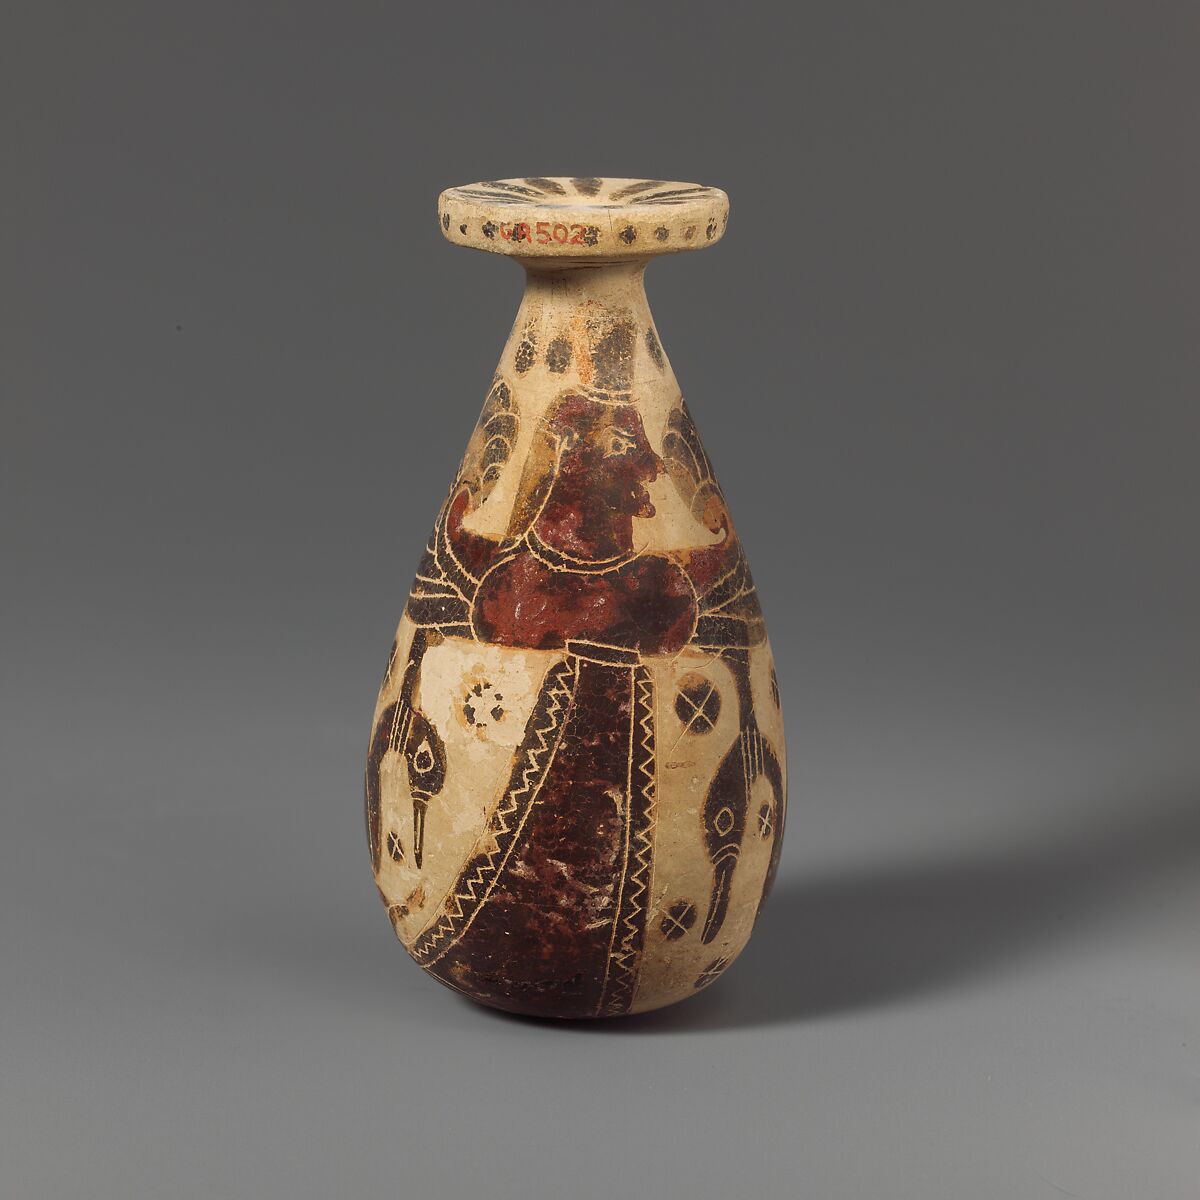 Terracotta alabastron (perfume vase), Attributed to the Potnia Painter, Terracotta, Greek, Corinthian 